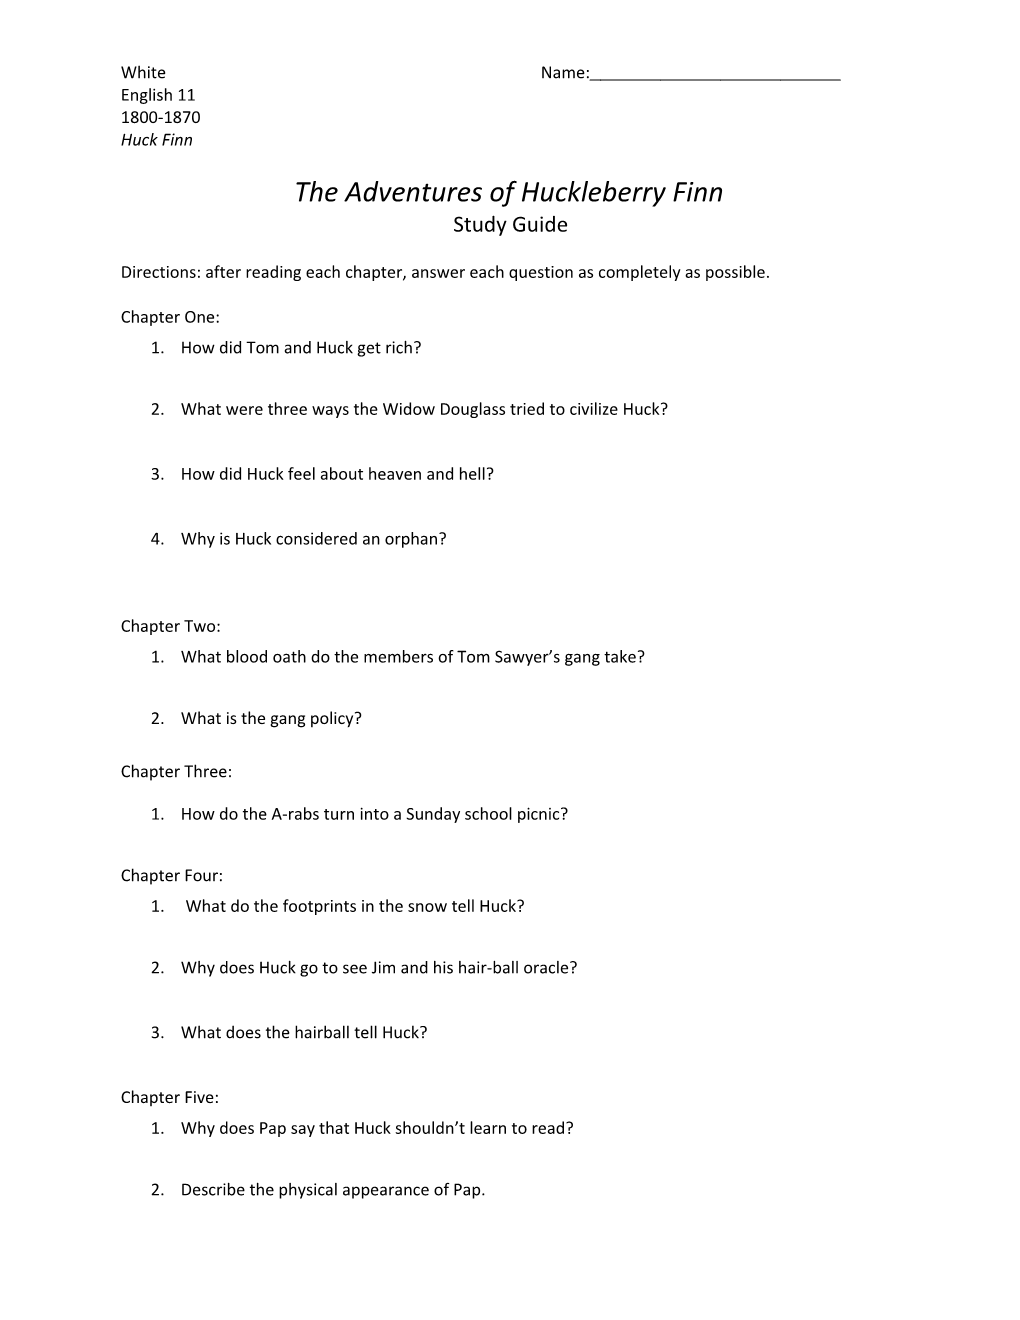 The Adventures of Huckleberry Finn s2